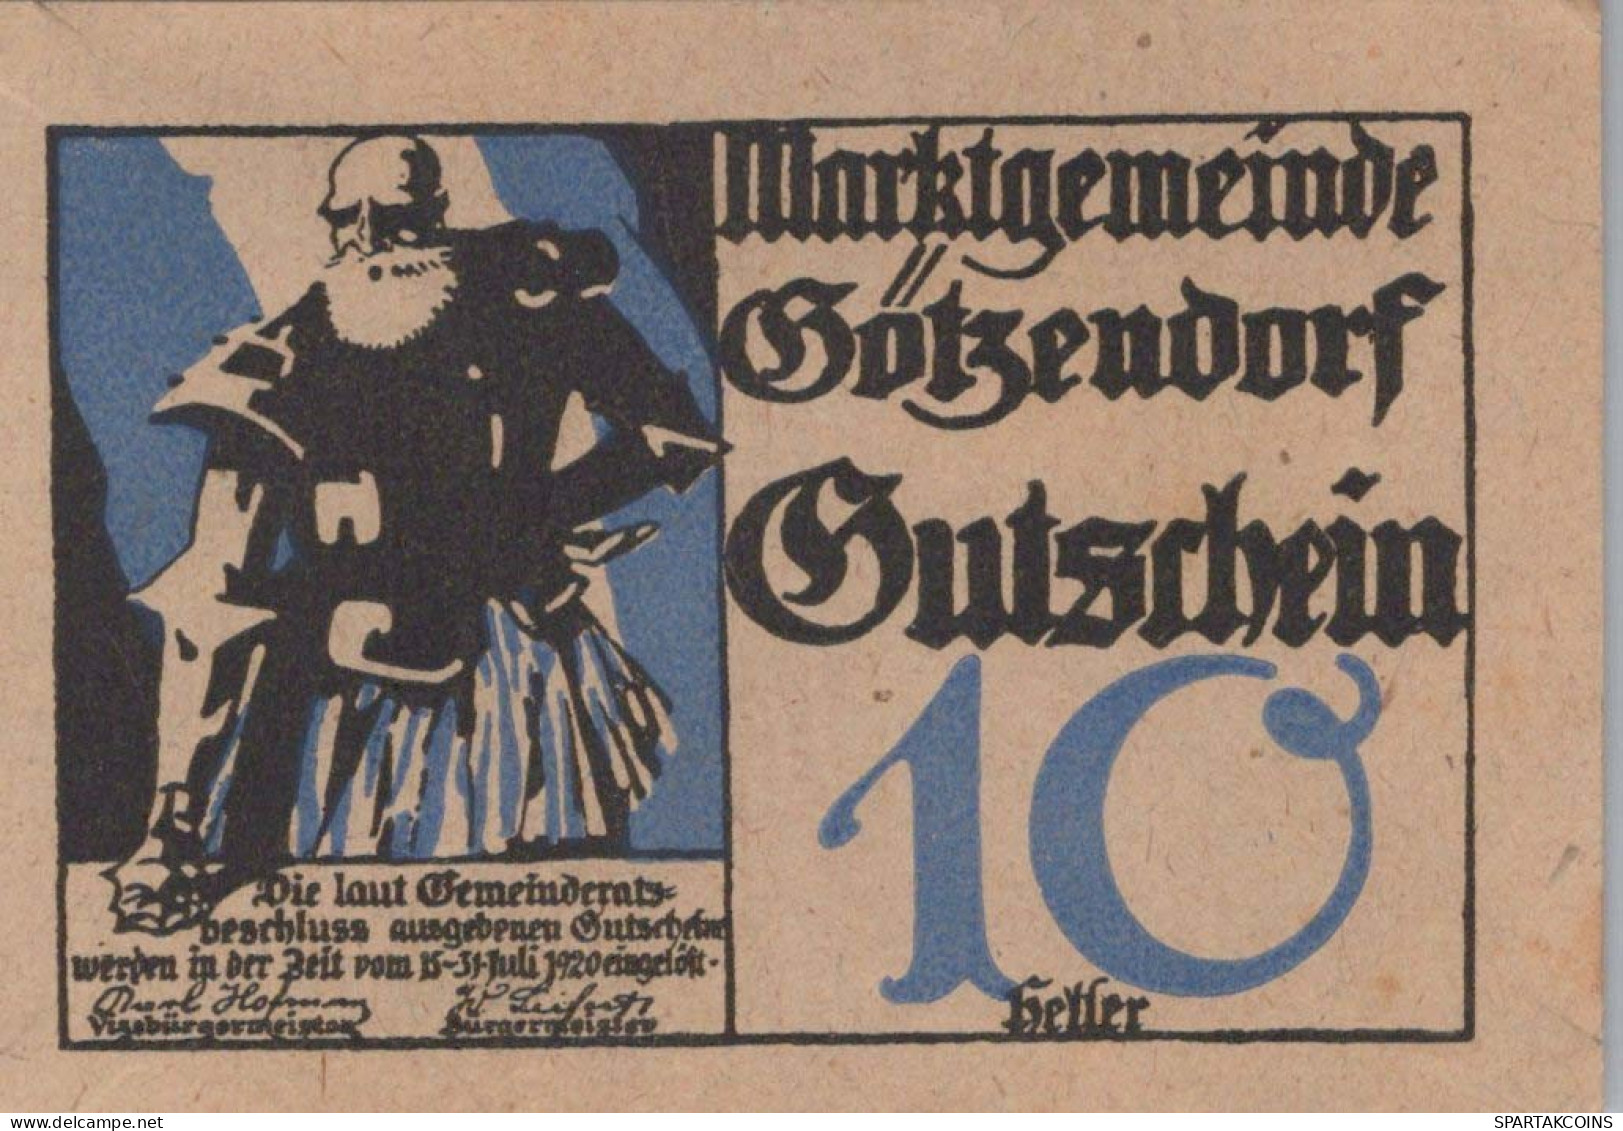 10 HELLER 1920 Stadt GoTZENDORF AN DER LEITHA Niedrigeren Österreich #PF023 - [11] Emissions Locales